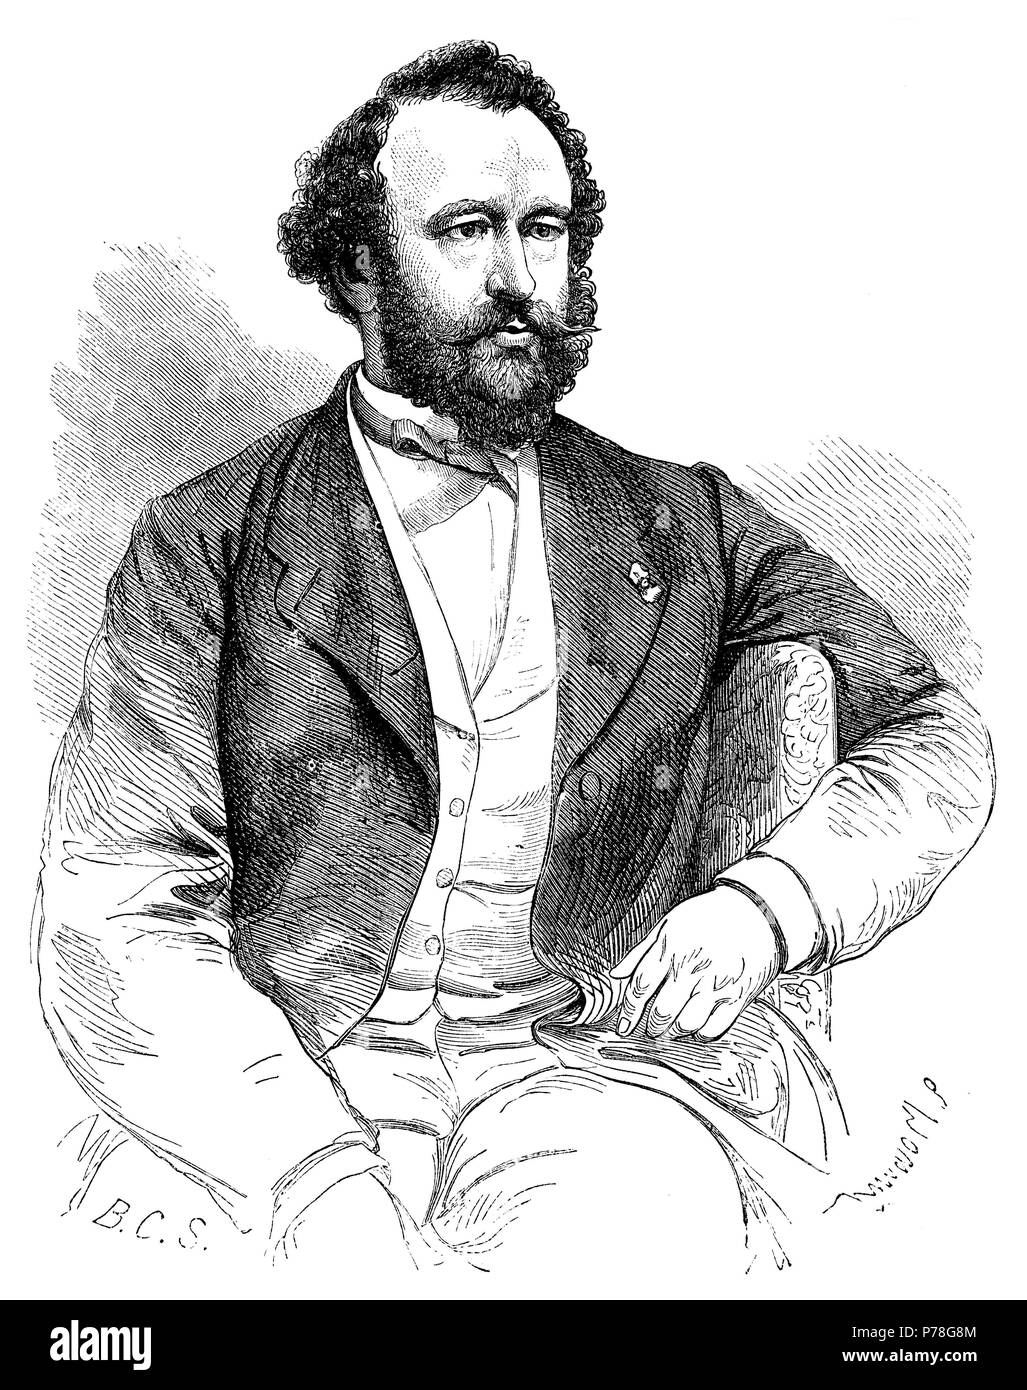 Sax, Adolphe (1814-1894), Konstruktor de instrumentos Musicales de viento Belga. Erfinder del saxofón. Grabado de 1863. Stockfoto